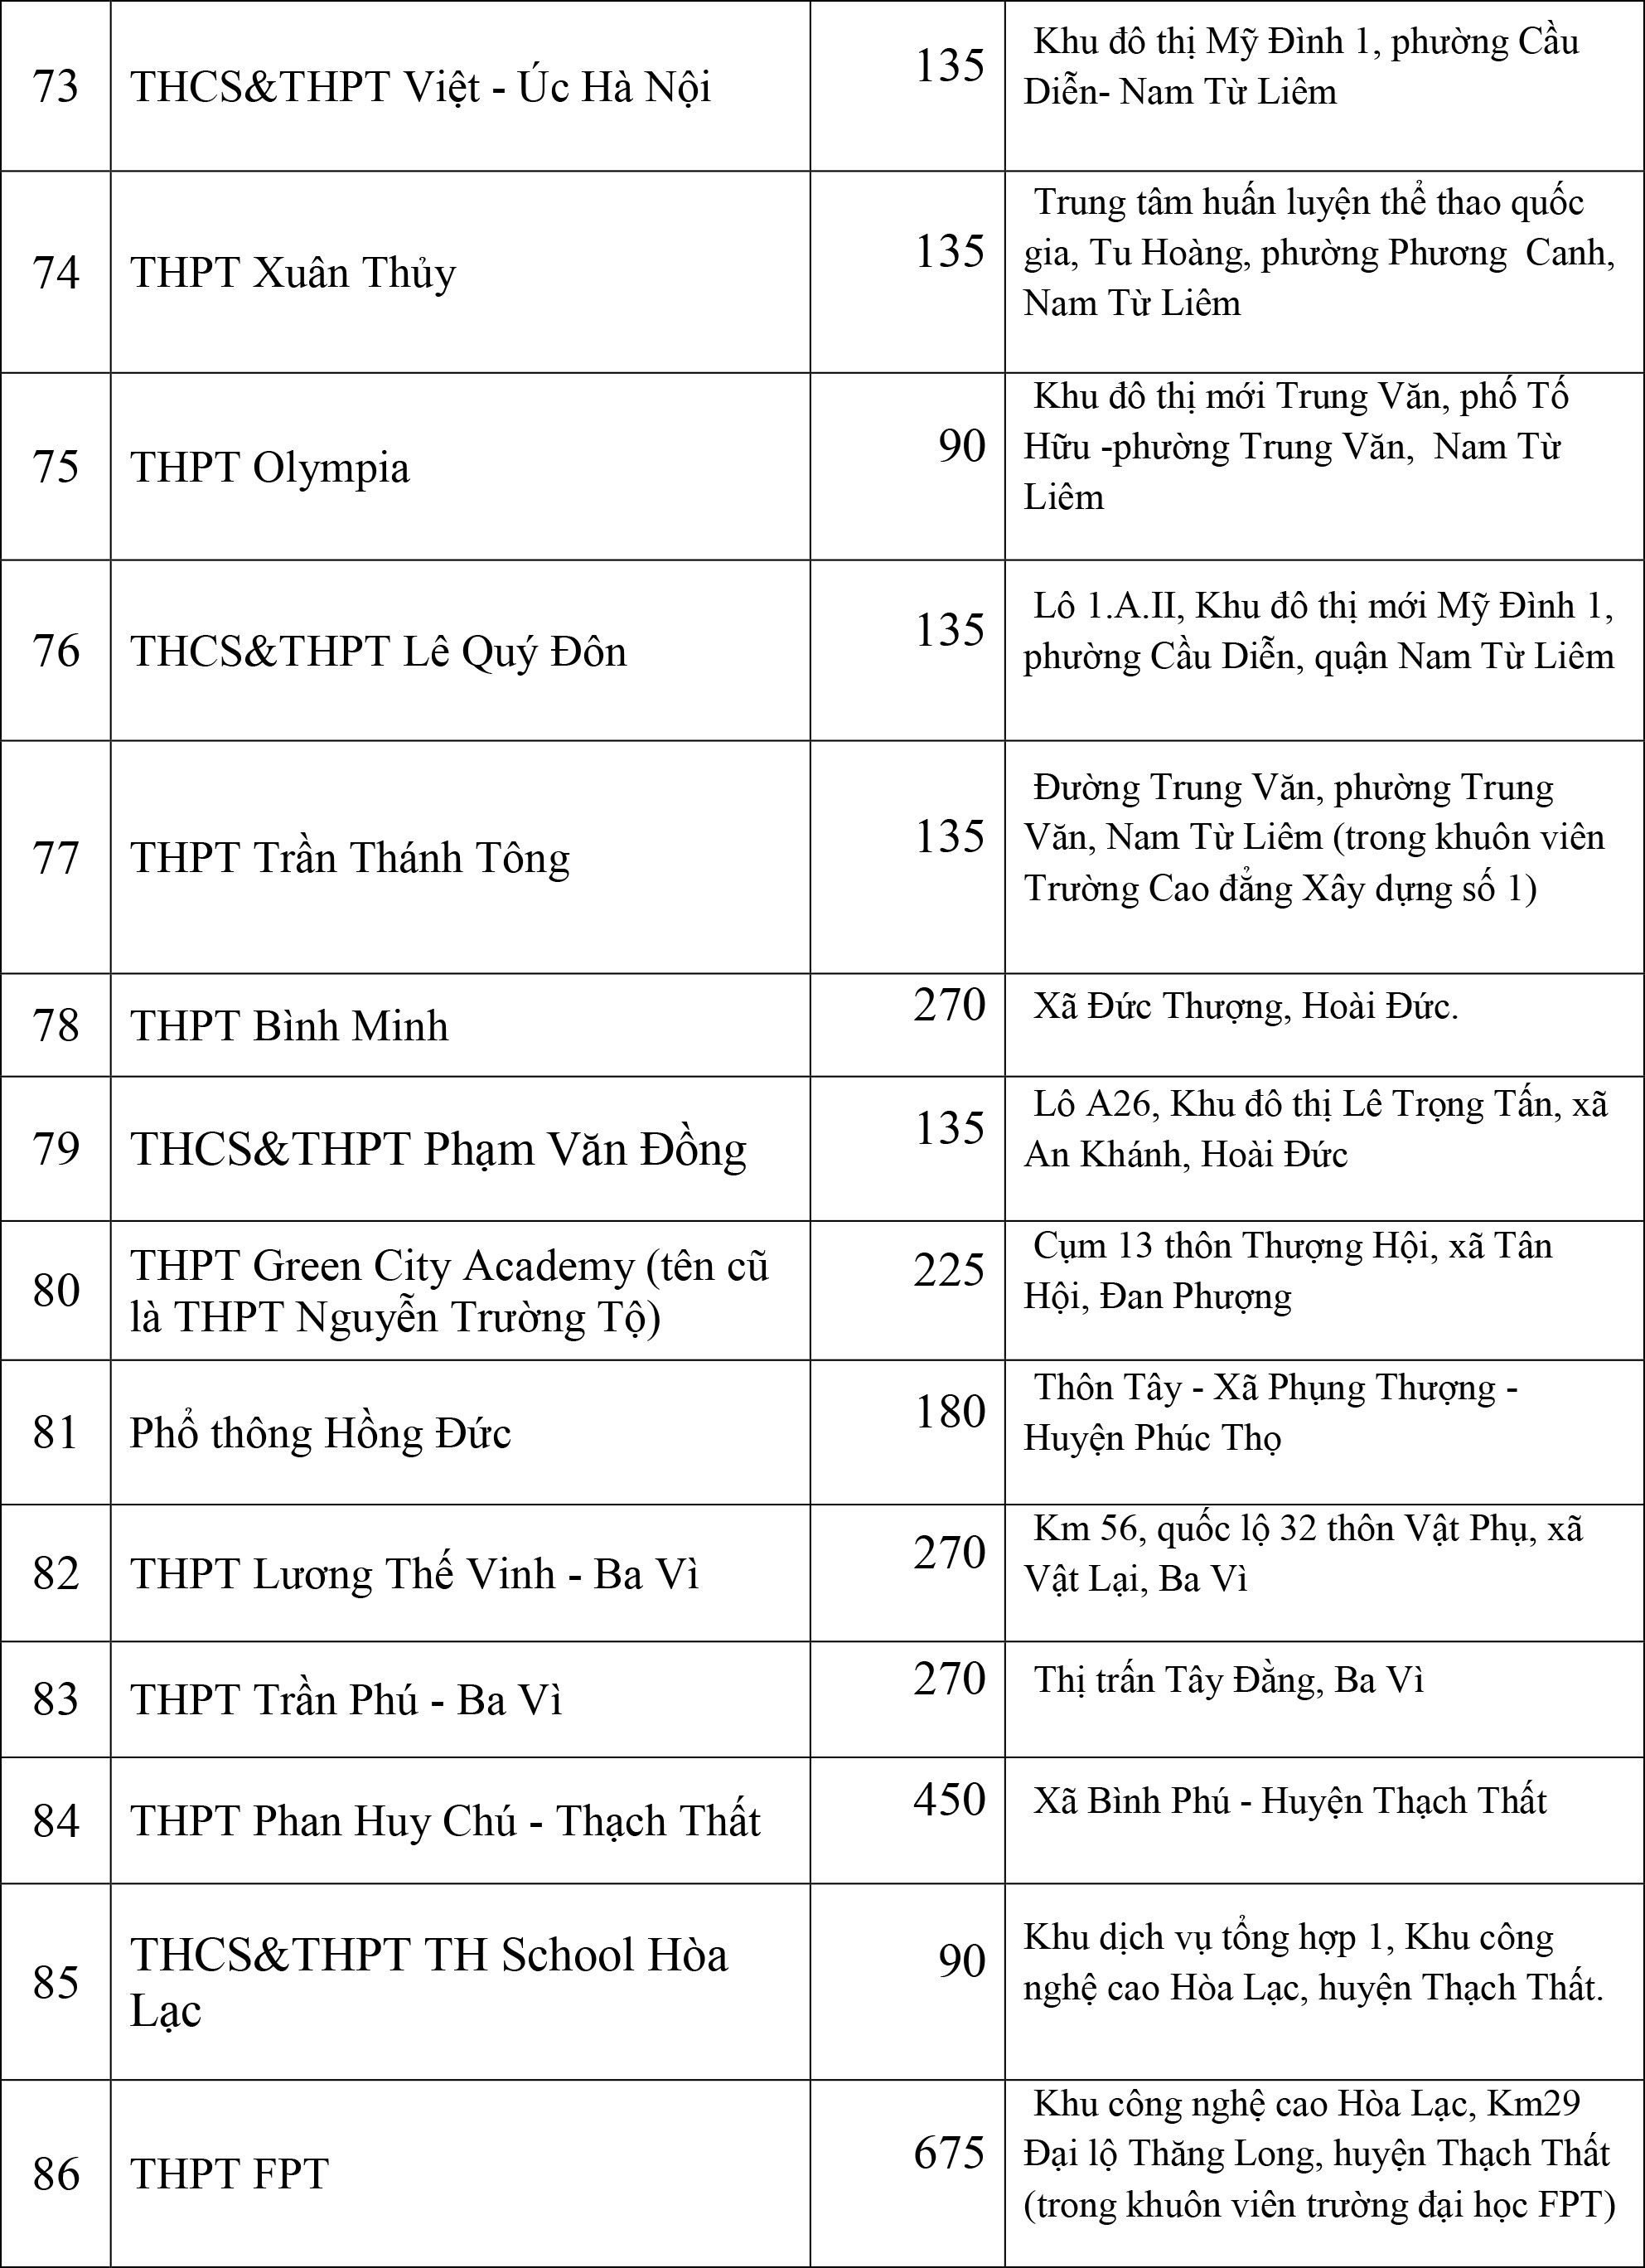 Thông tin mới nhất về chỉ tiêu tuyển sinh của các trường THPT chuyên tại Hà Nội, phụ huynh cân nhắc nộp hồ sơ cho con - Ảnh 15.